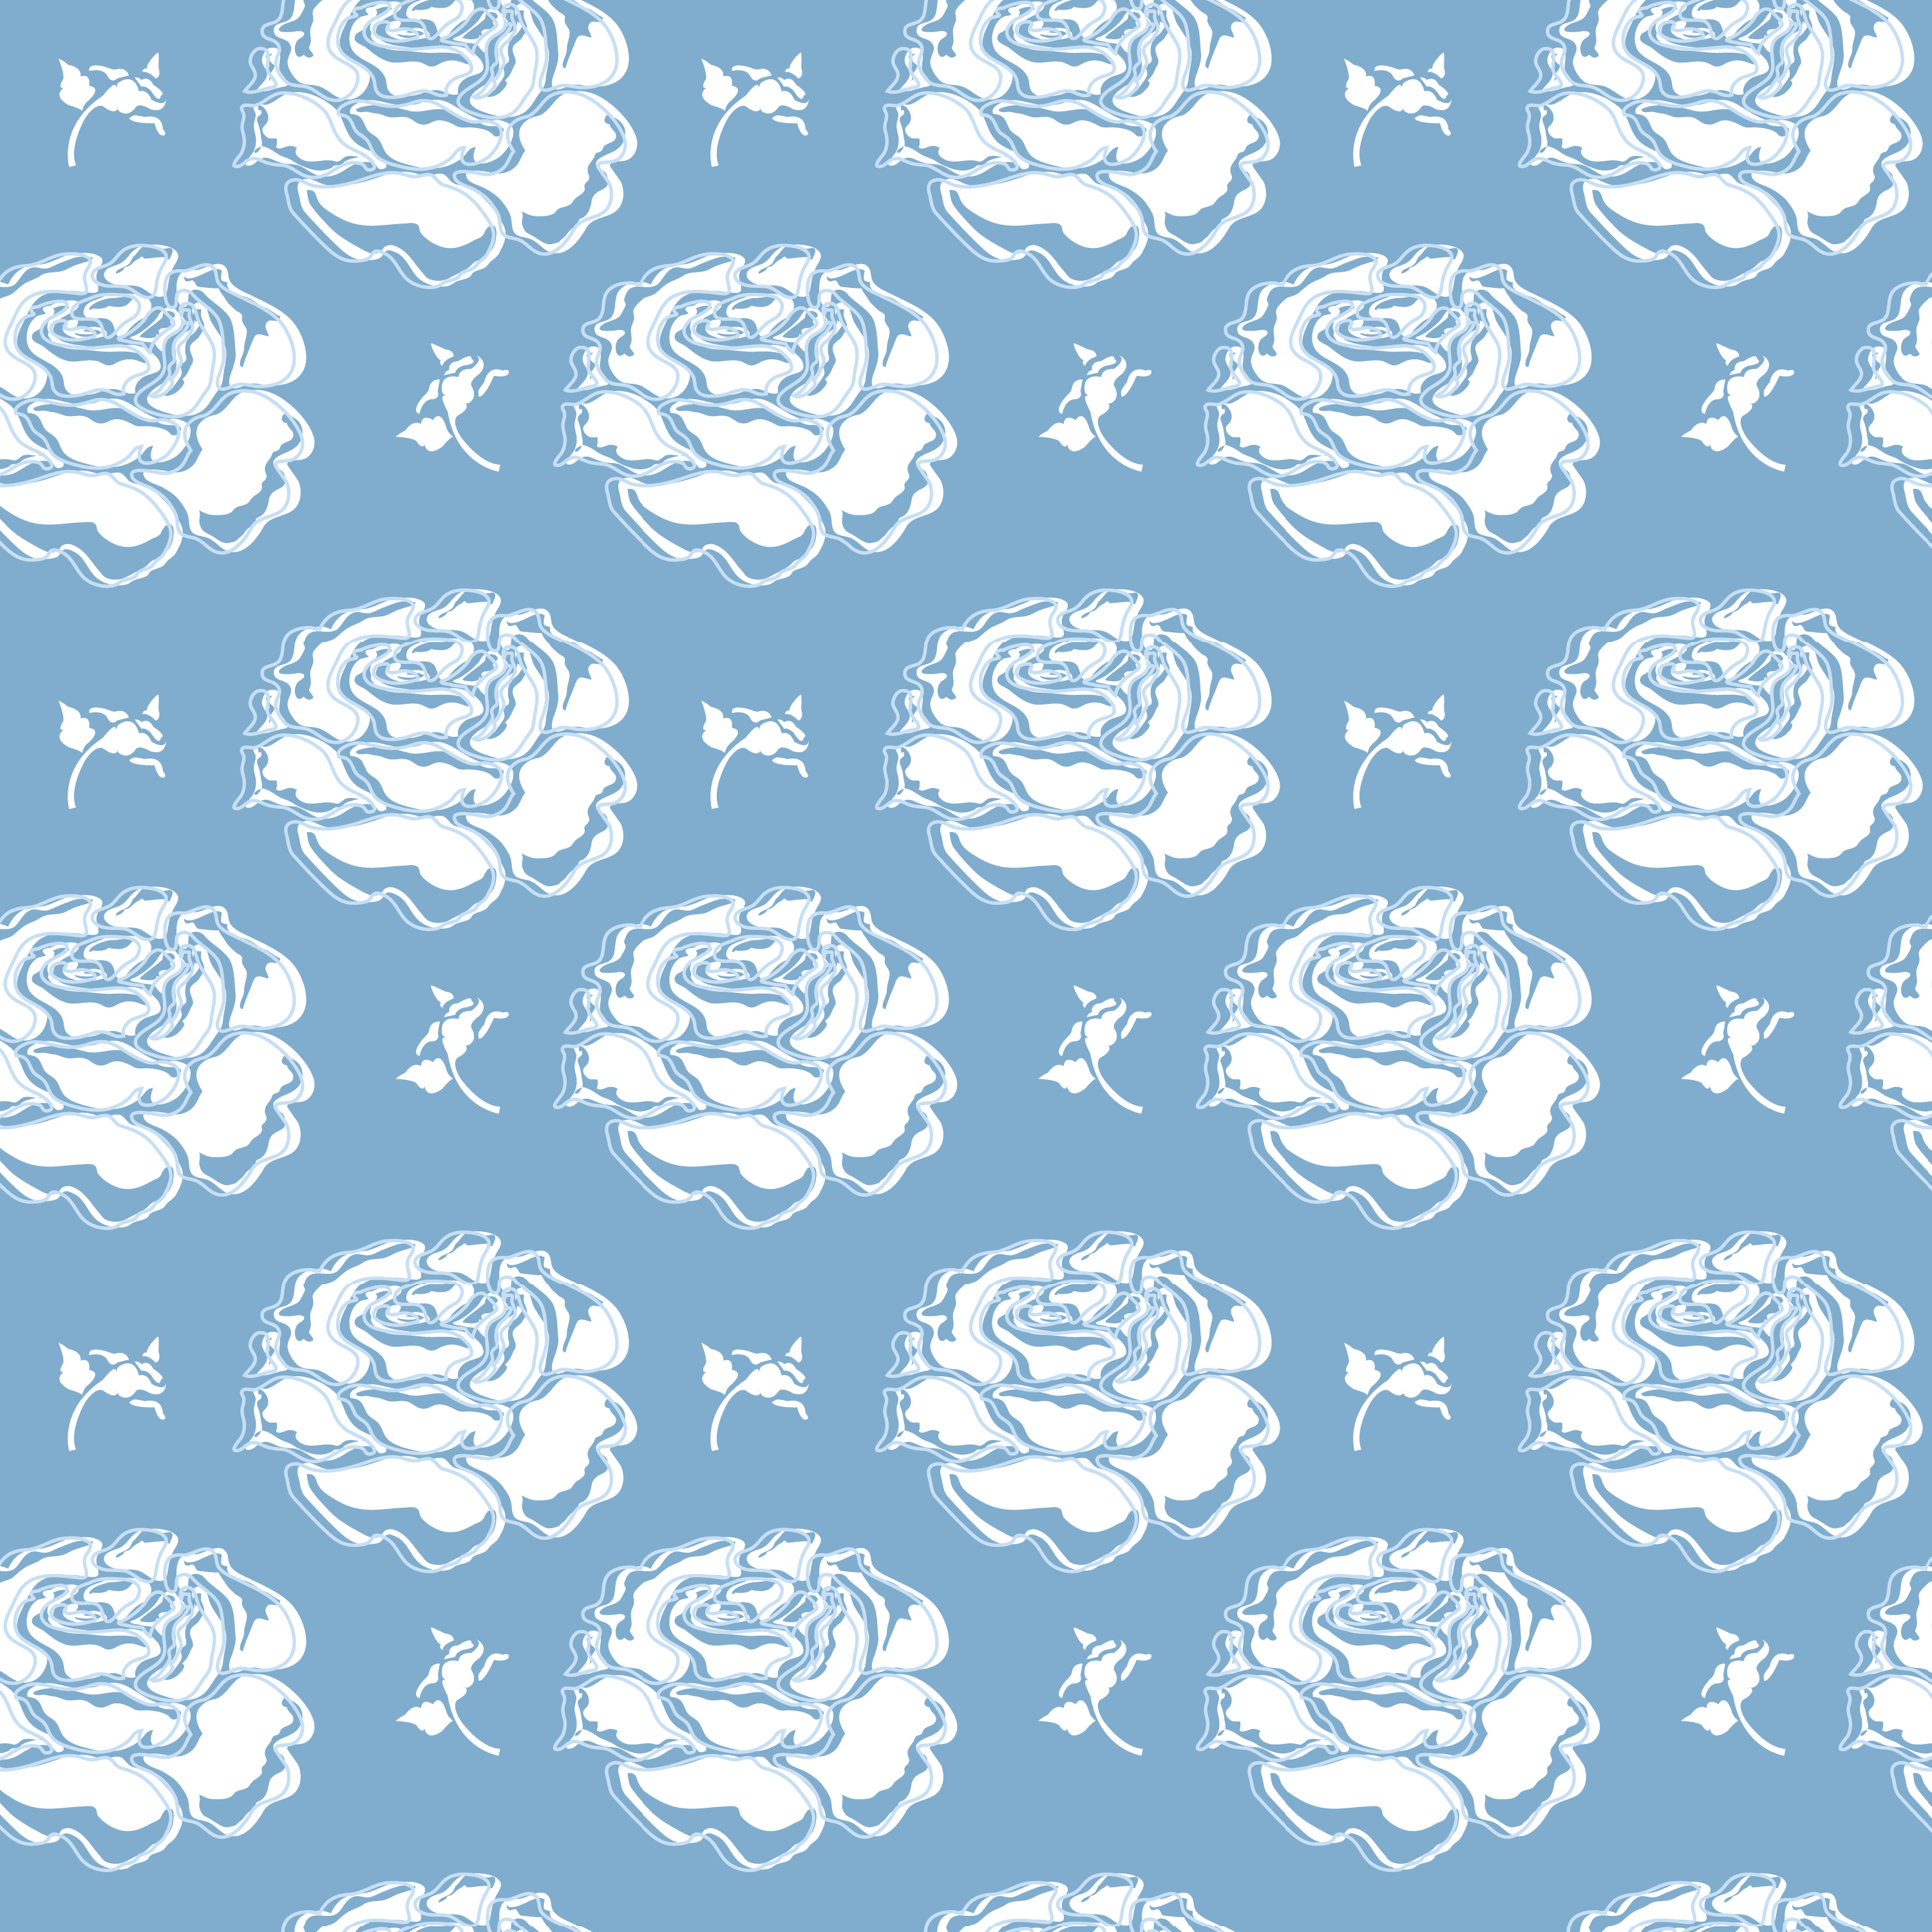 壁紙 背景イラスト 花の模様 柄 パターン No 047 白バラ 青背景